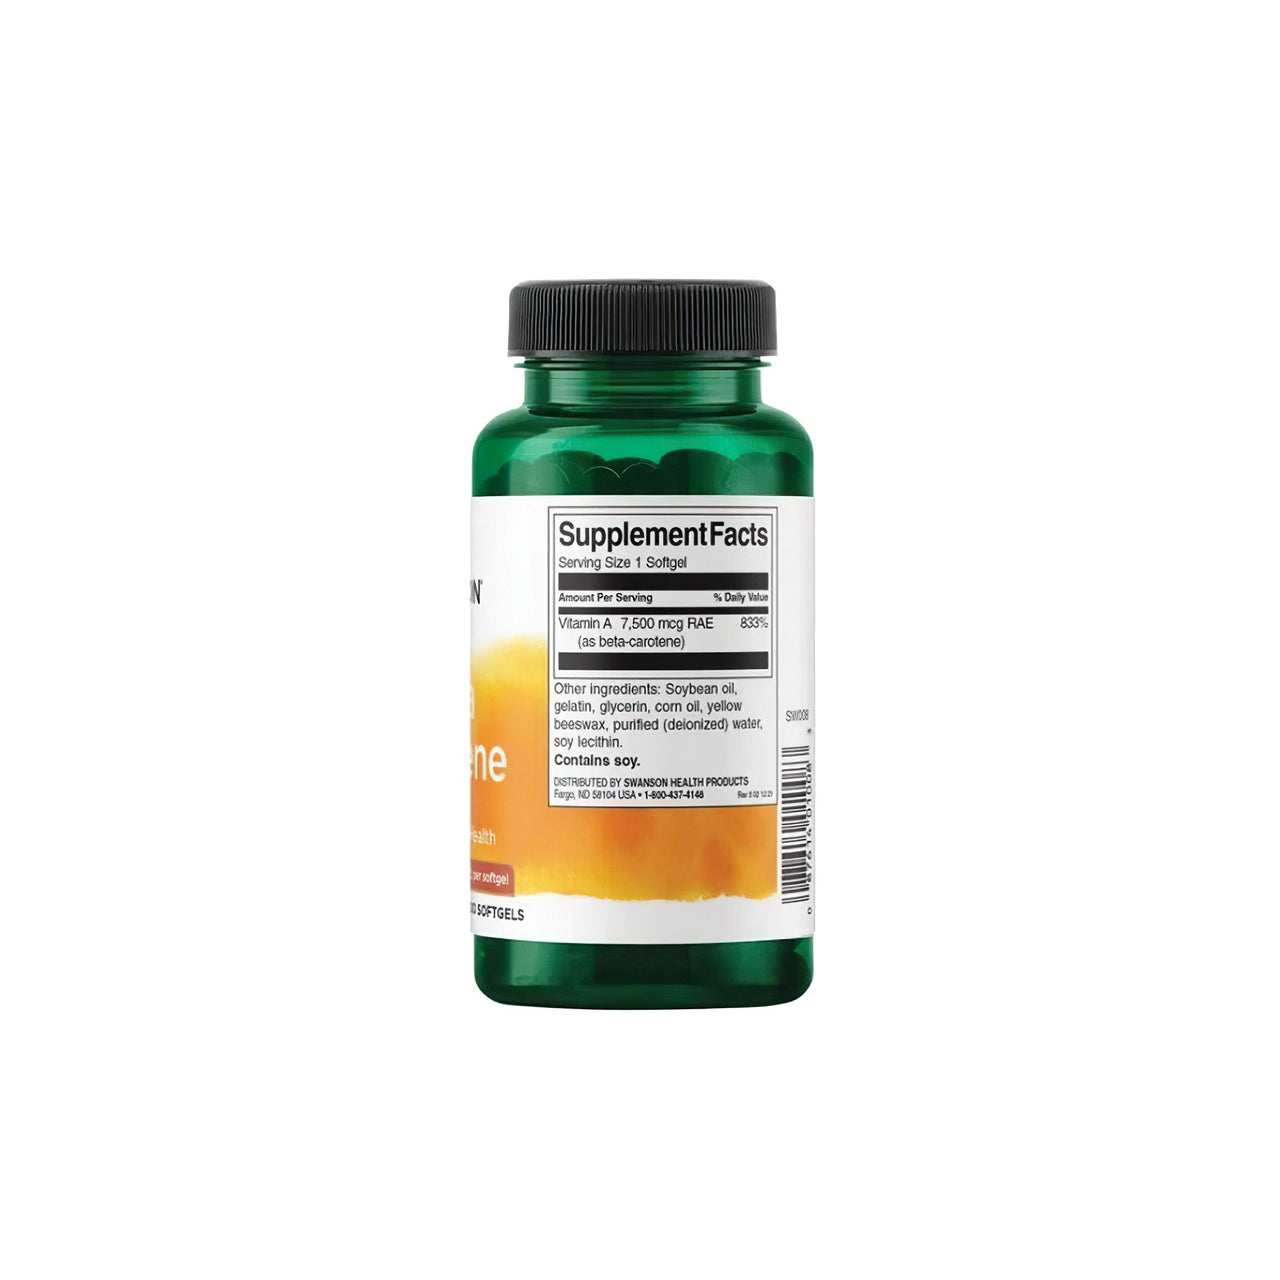 Flacone di integratore alimentare Swanson Beta-Carotene - 25000 IU 300 softgels Vitamina A su sfondo bianco.